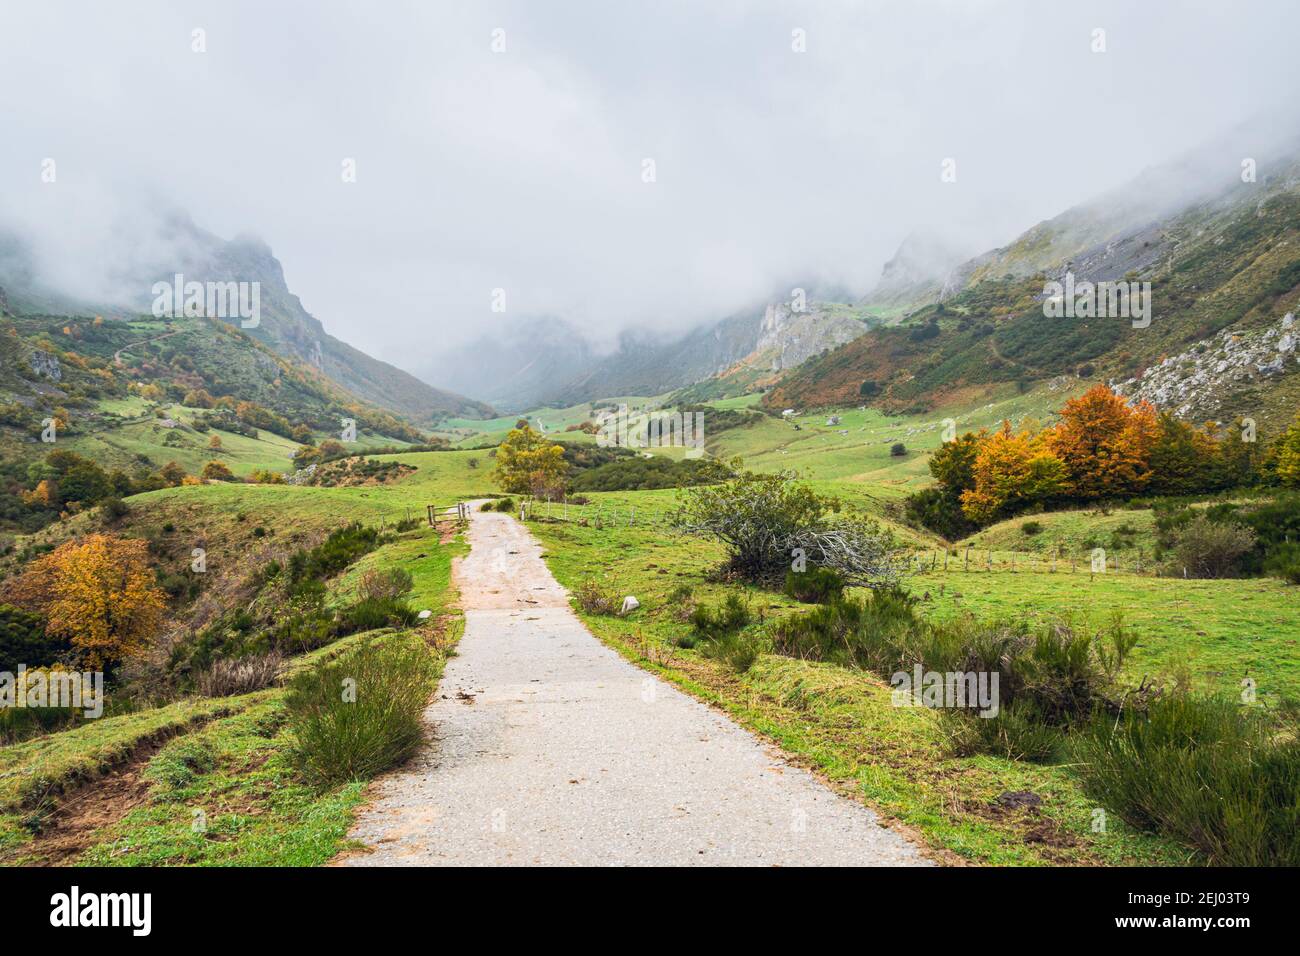 Route dans une vallée dans le parc national de Somiedo dans les Asturies, en Espagne, lors d'un jour pluvieux d'automne. Paysage automnal pittoresque du nord de l'Espagne. Banque D'Images